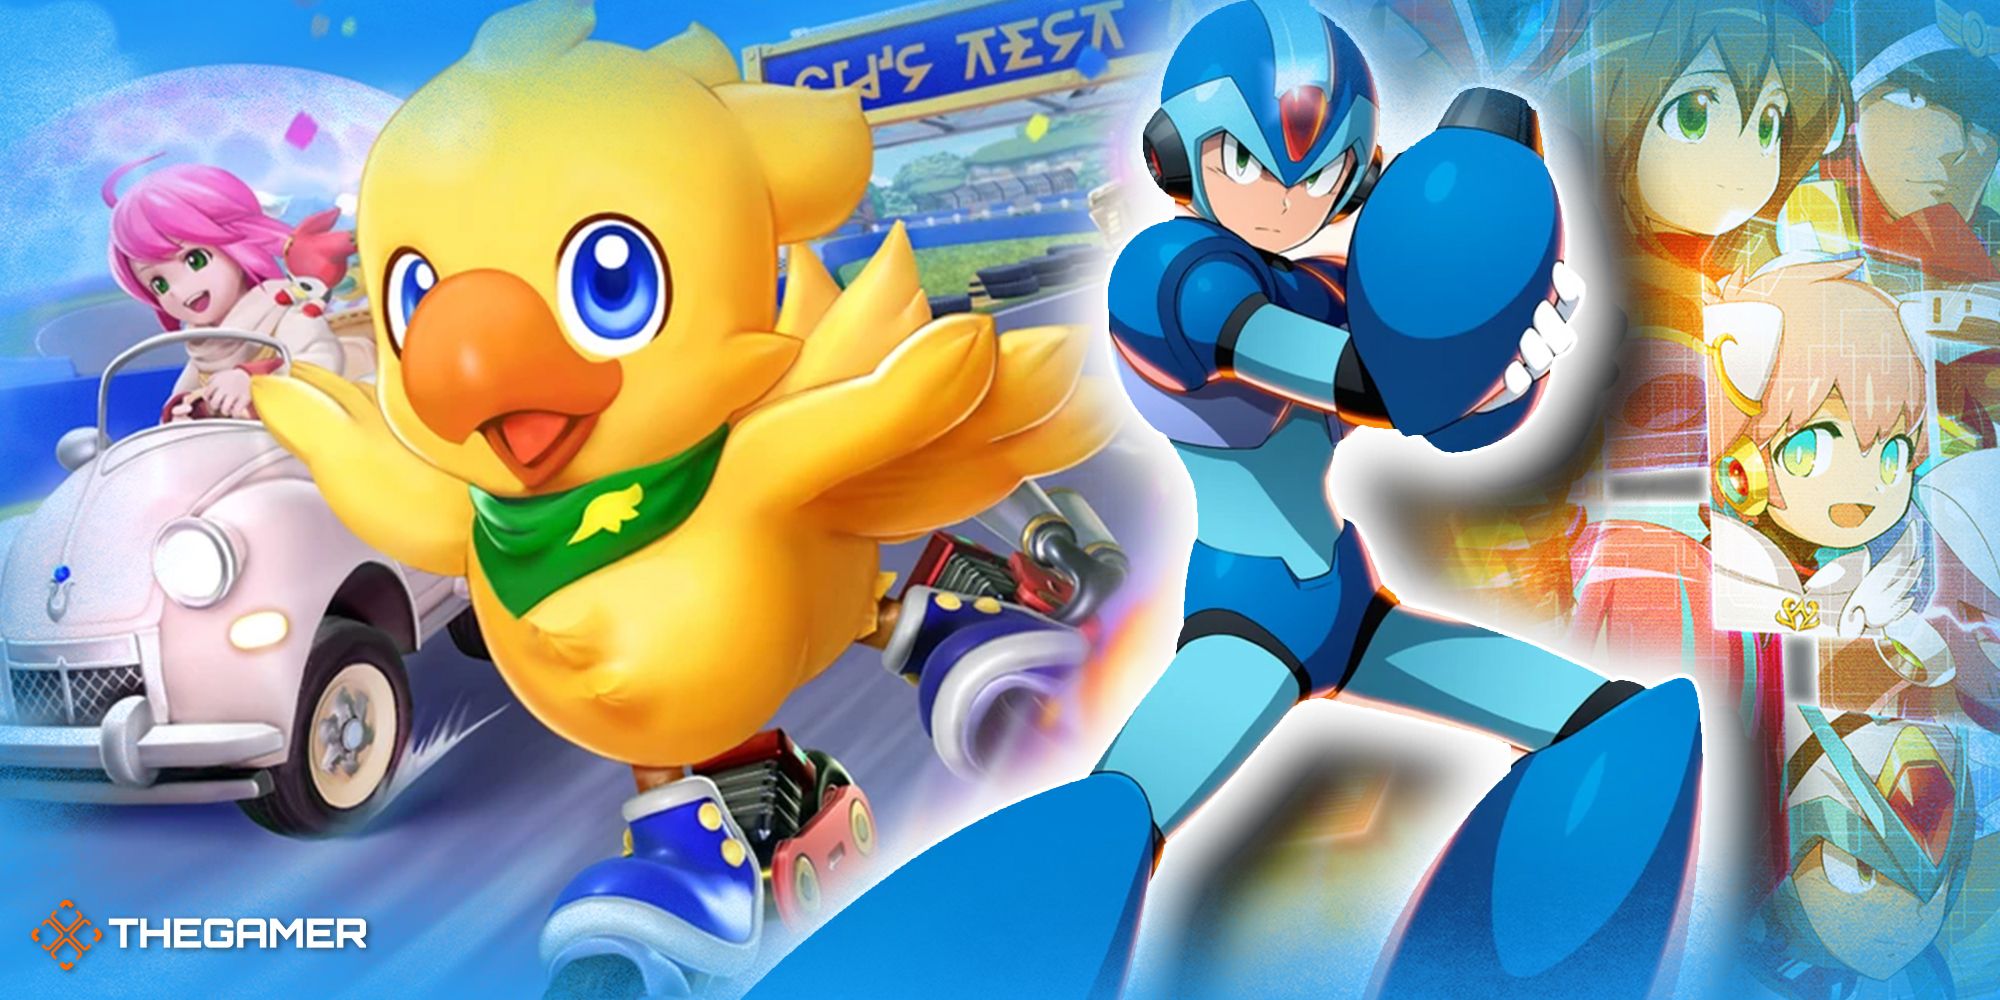 24-Chocobo GP and Mega Man X Dive